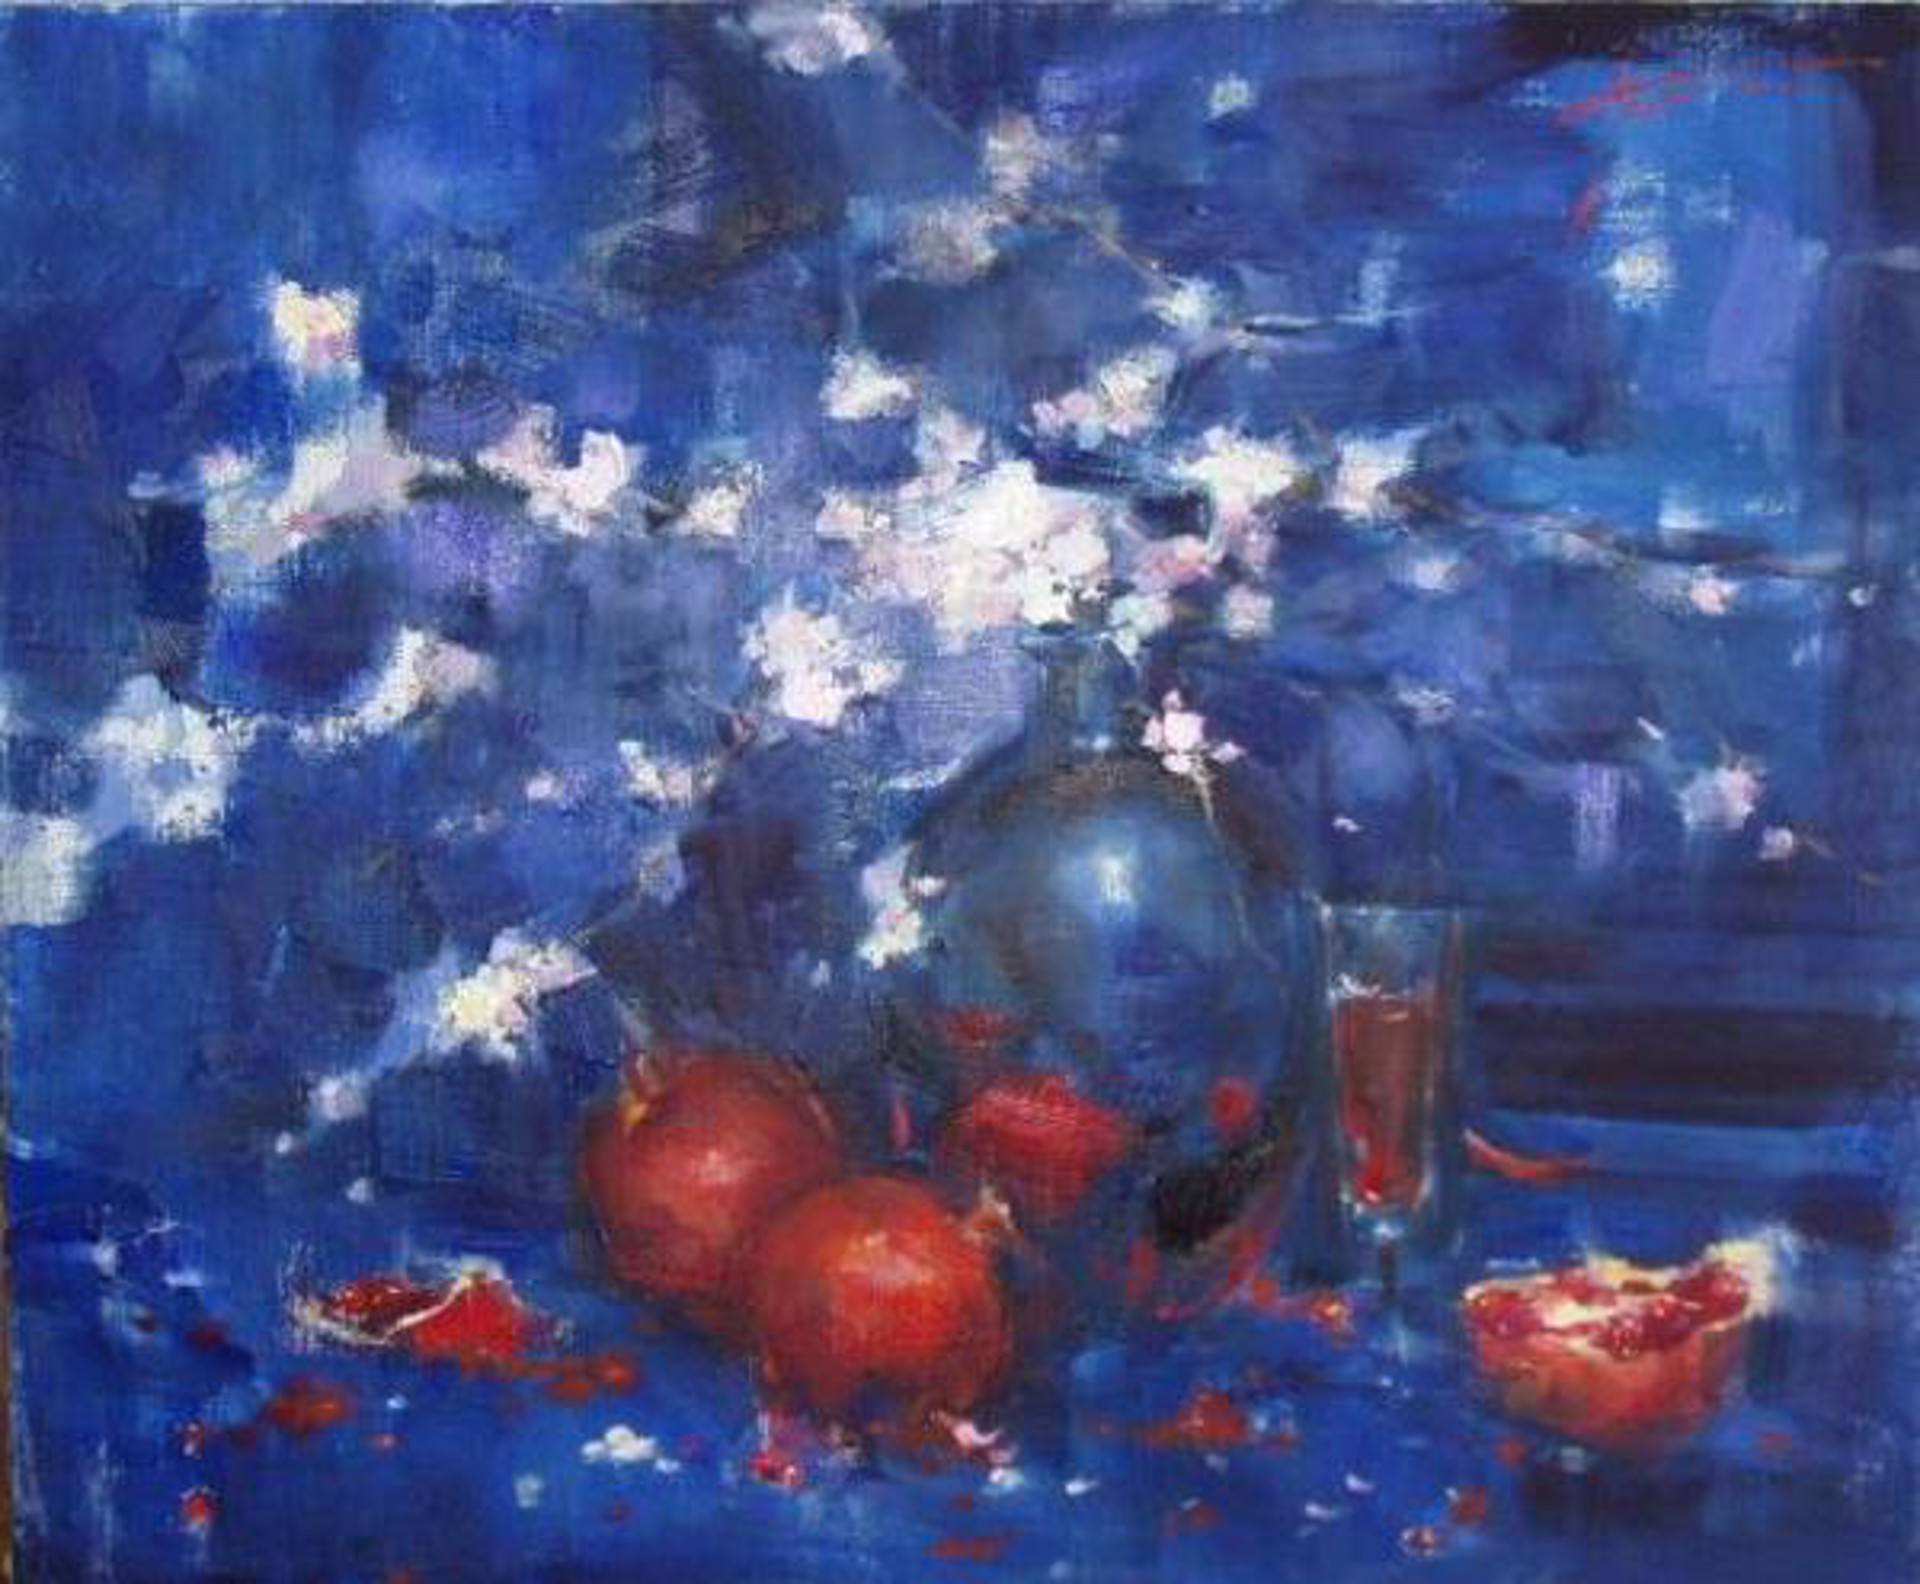 Pomegranates on Blue by Yana Golubyatnikova